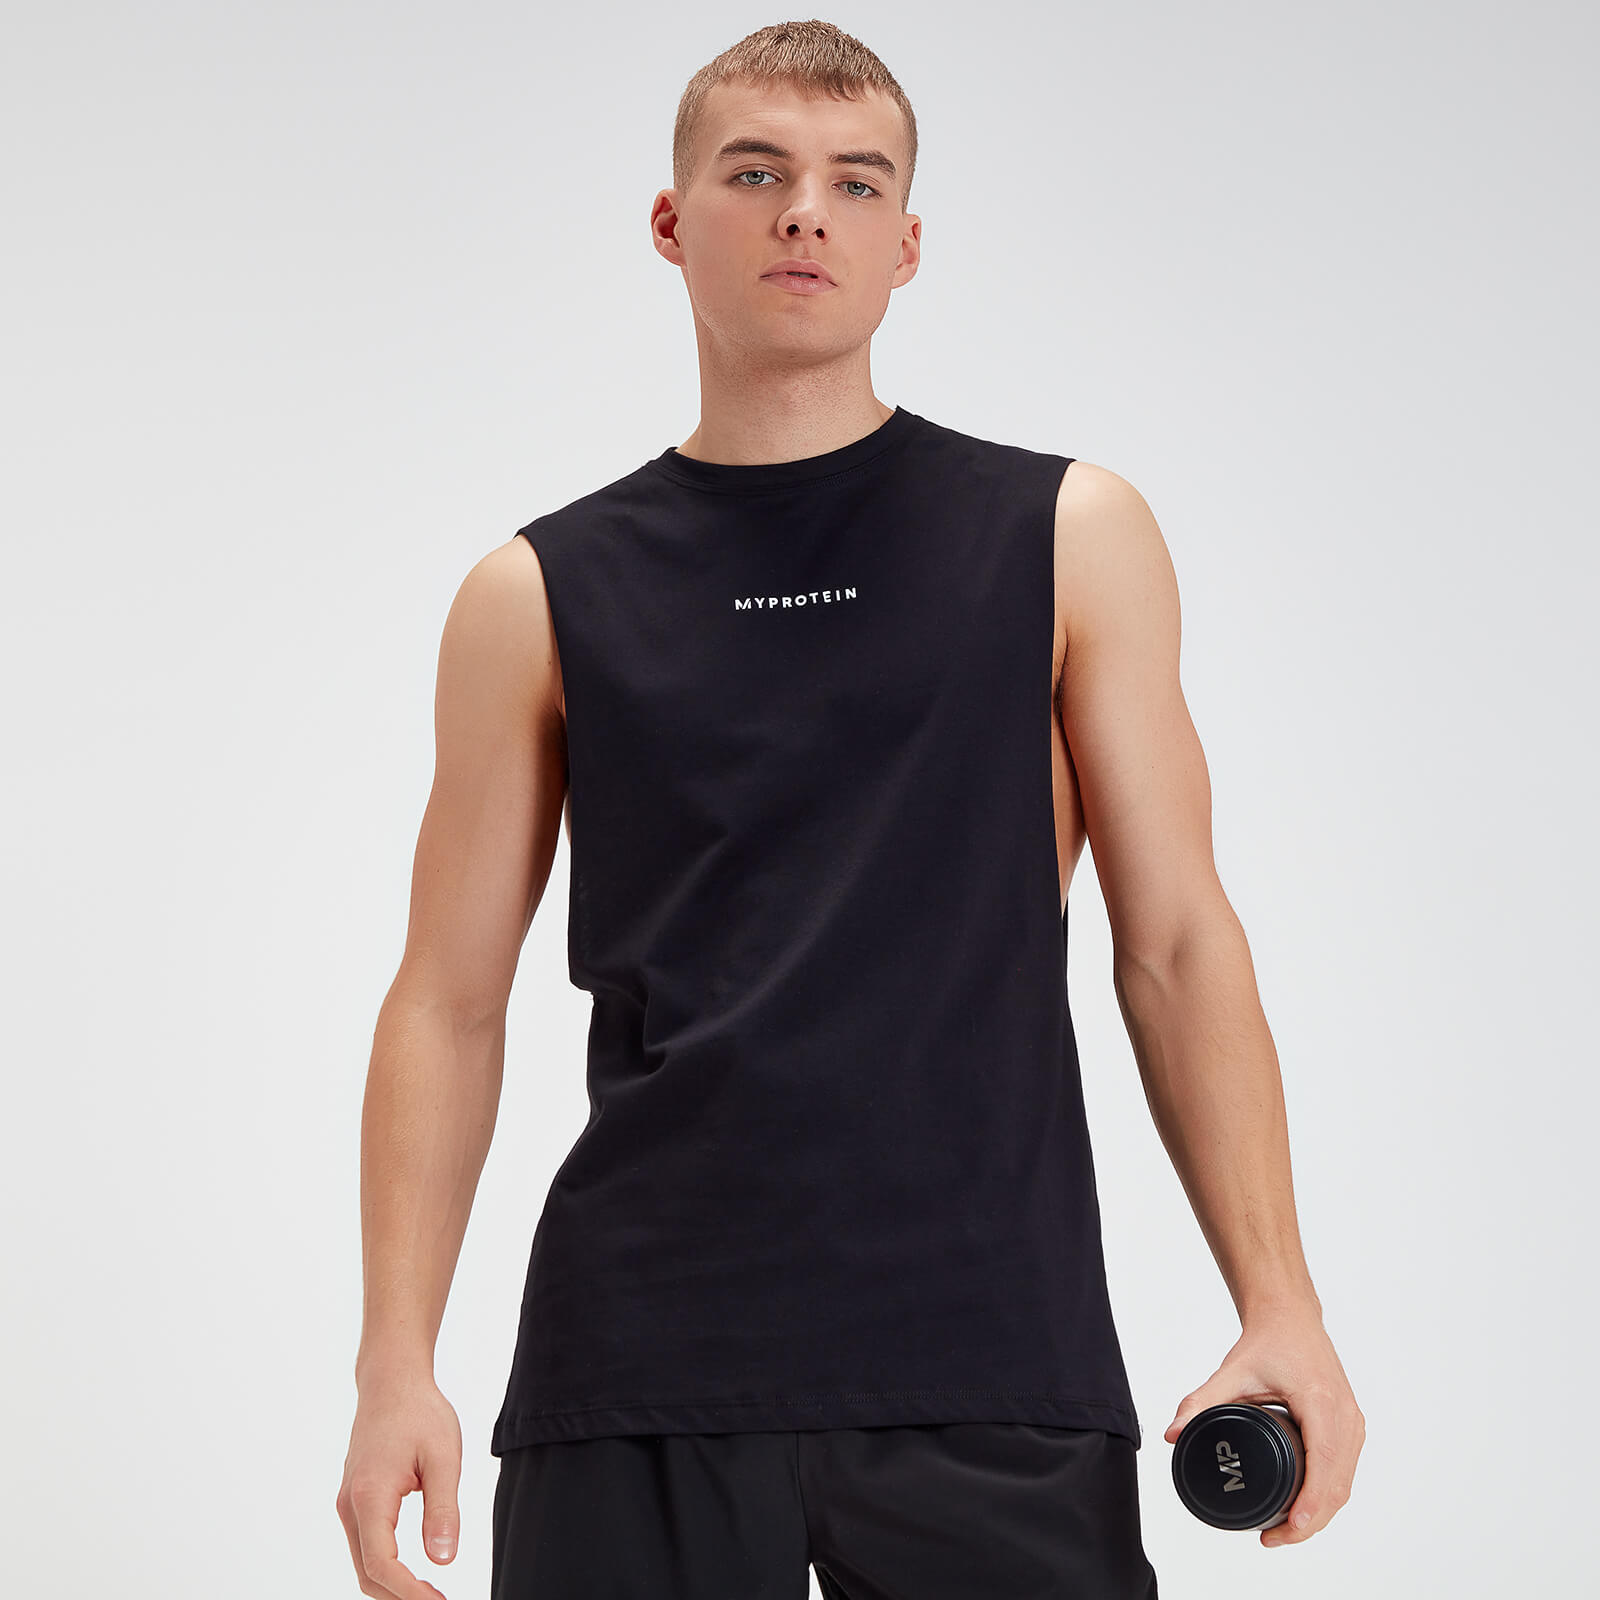 MP muška originalna majica bez rukava s otvorom za ruke - crna - XS